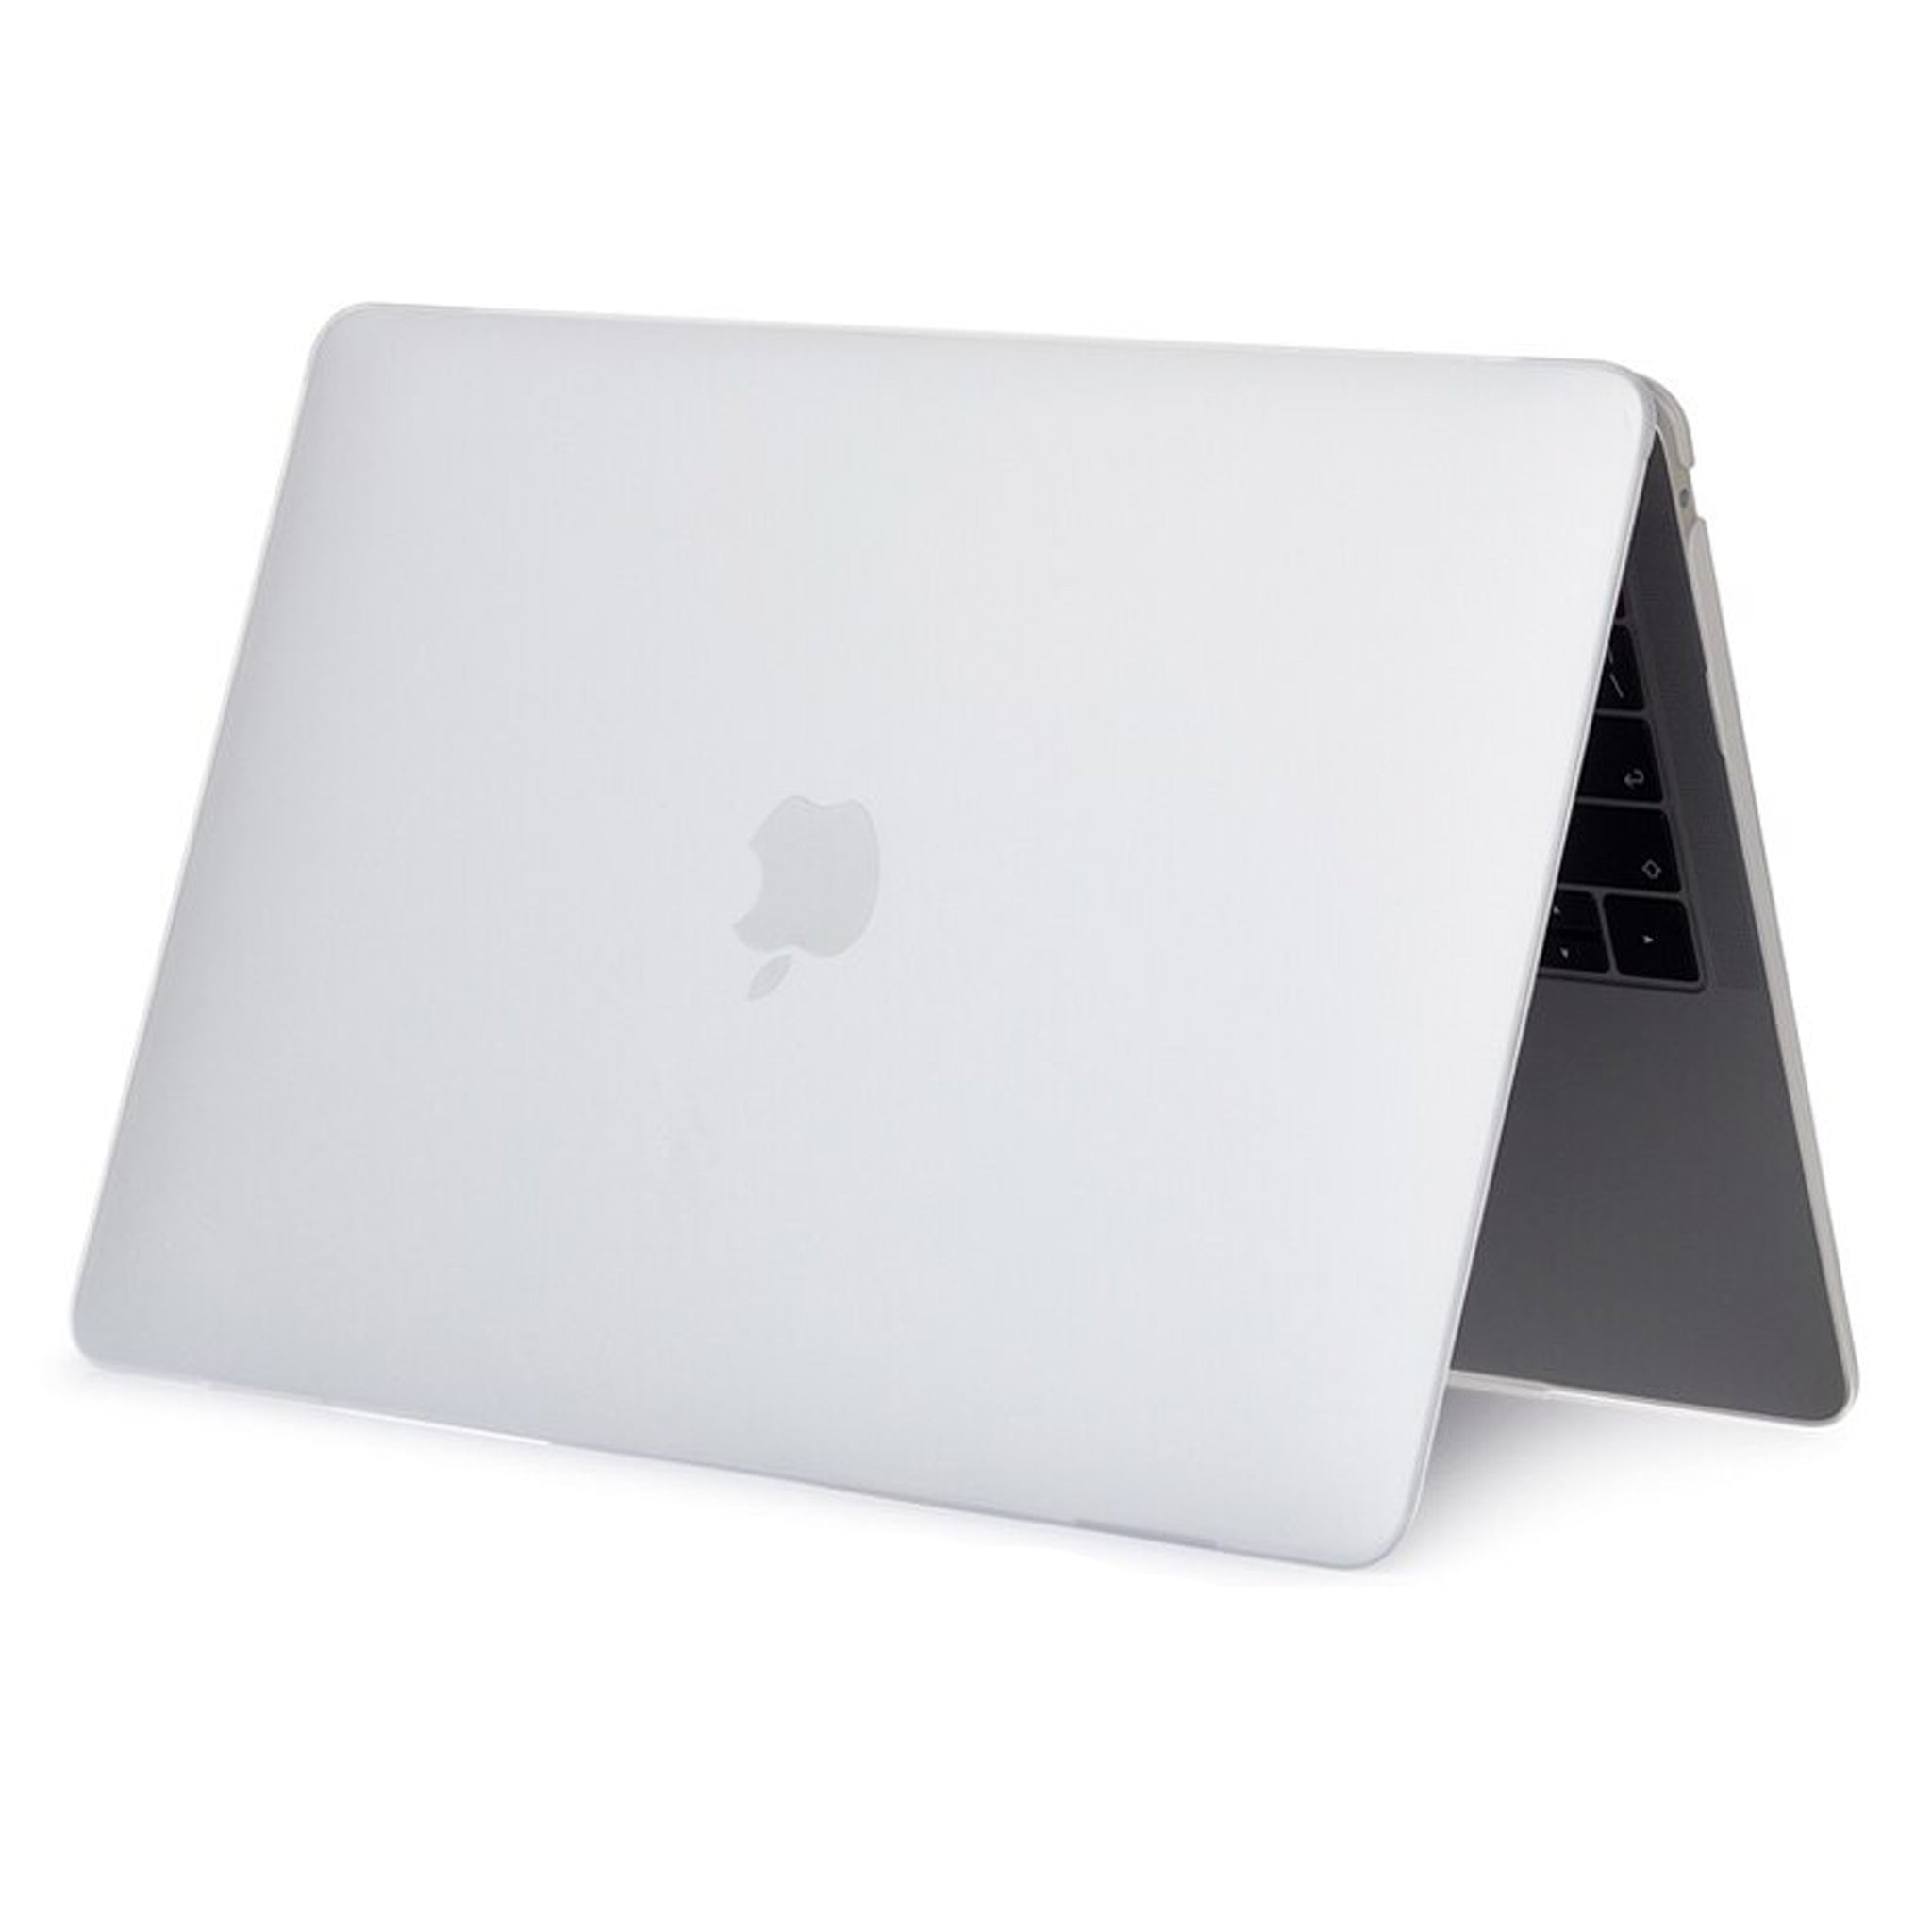 Coque MacBook fleurie beige esthétique MacBook Pro 13 16 Air 13 2020 12 15  pouces pour fille jolies feuilles pastel neutre tendance minimaliste housse  -  France